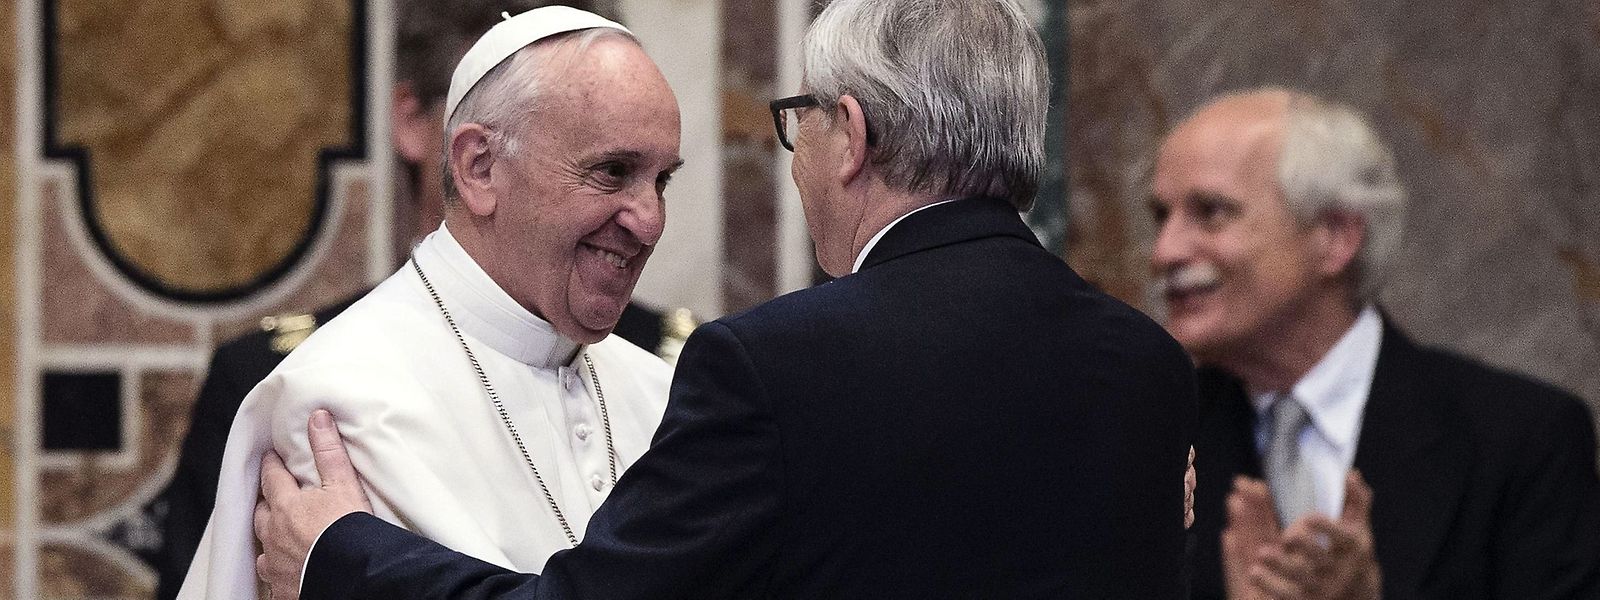 Franziskus ist der erste Papst, der den Karlspreis regulär bekommt. Hier gratuliert ihm Jean-Claude Juncker.